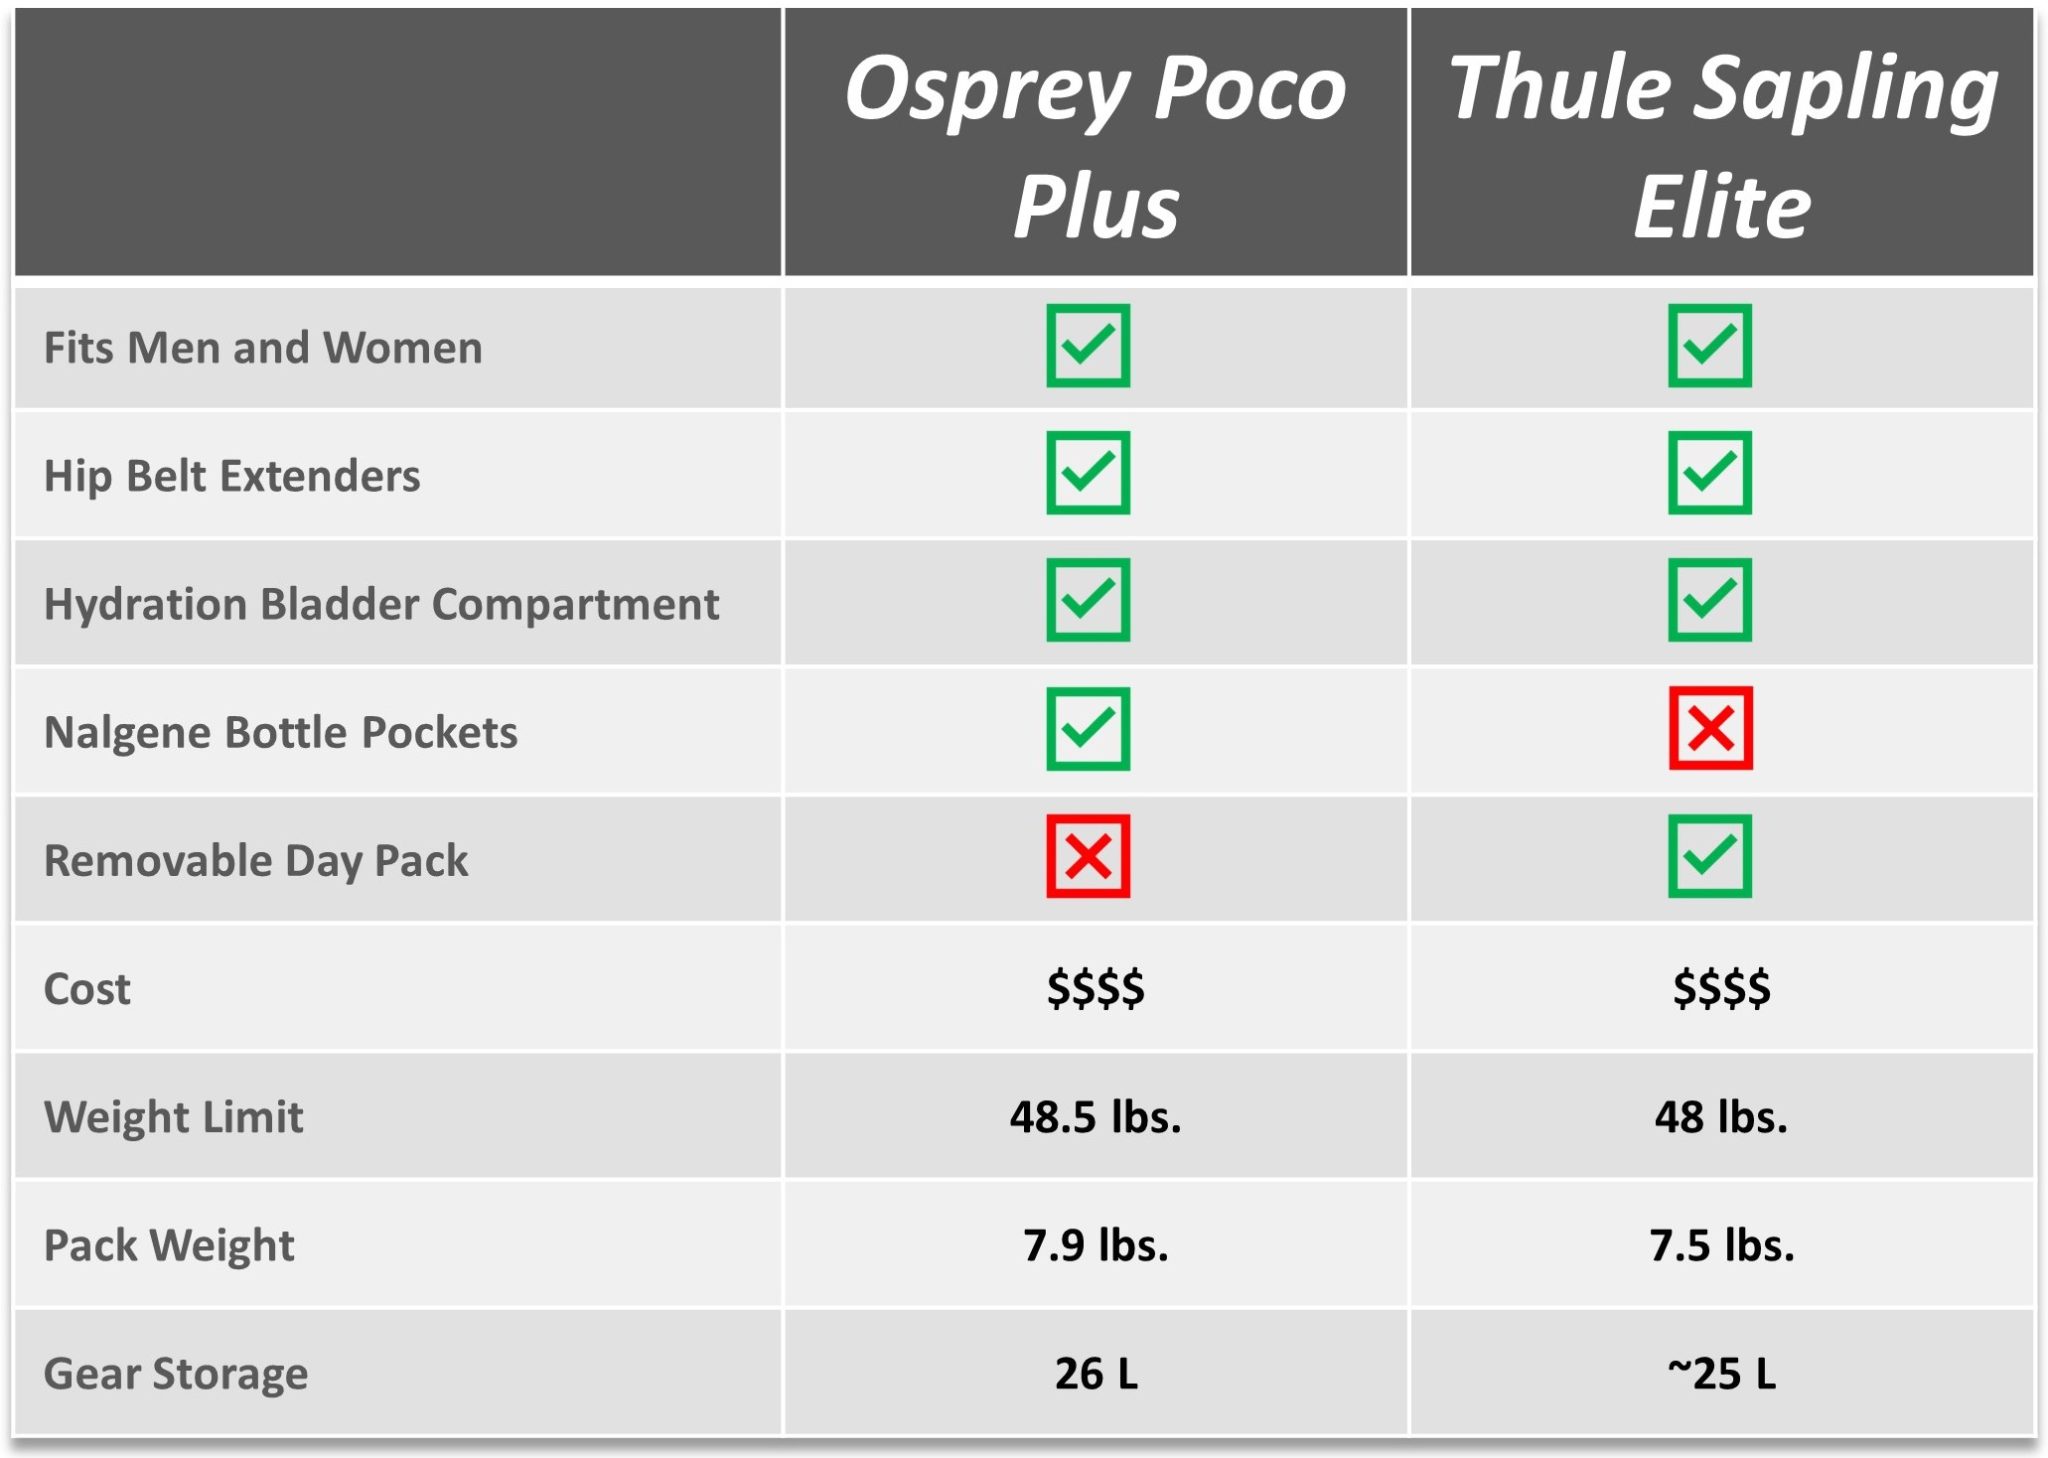 Osprey Poco Plus vs thule spaling elite feature comarison